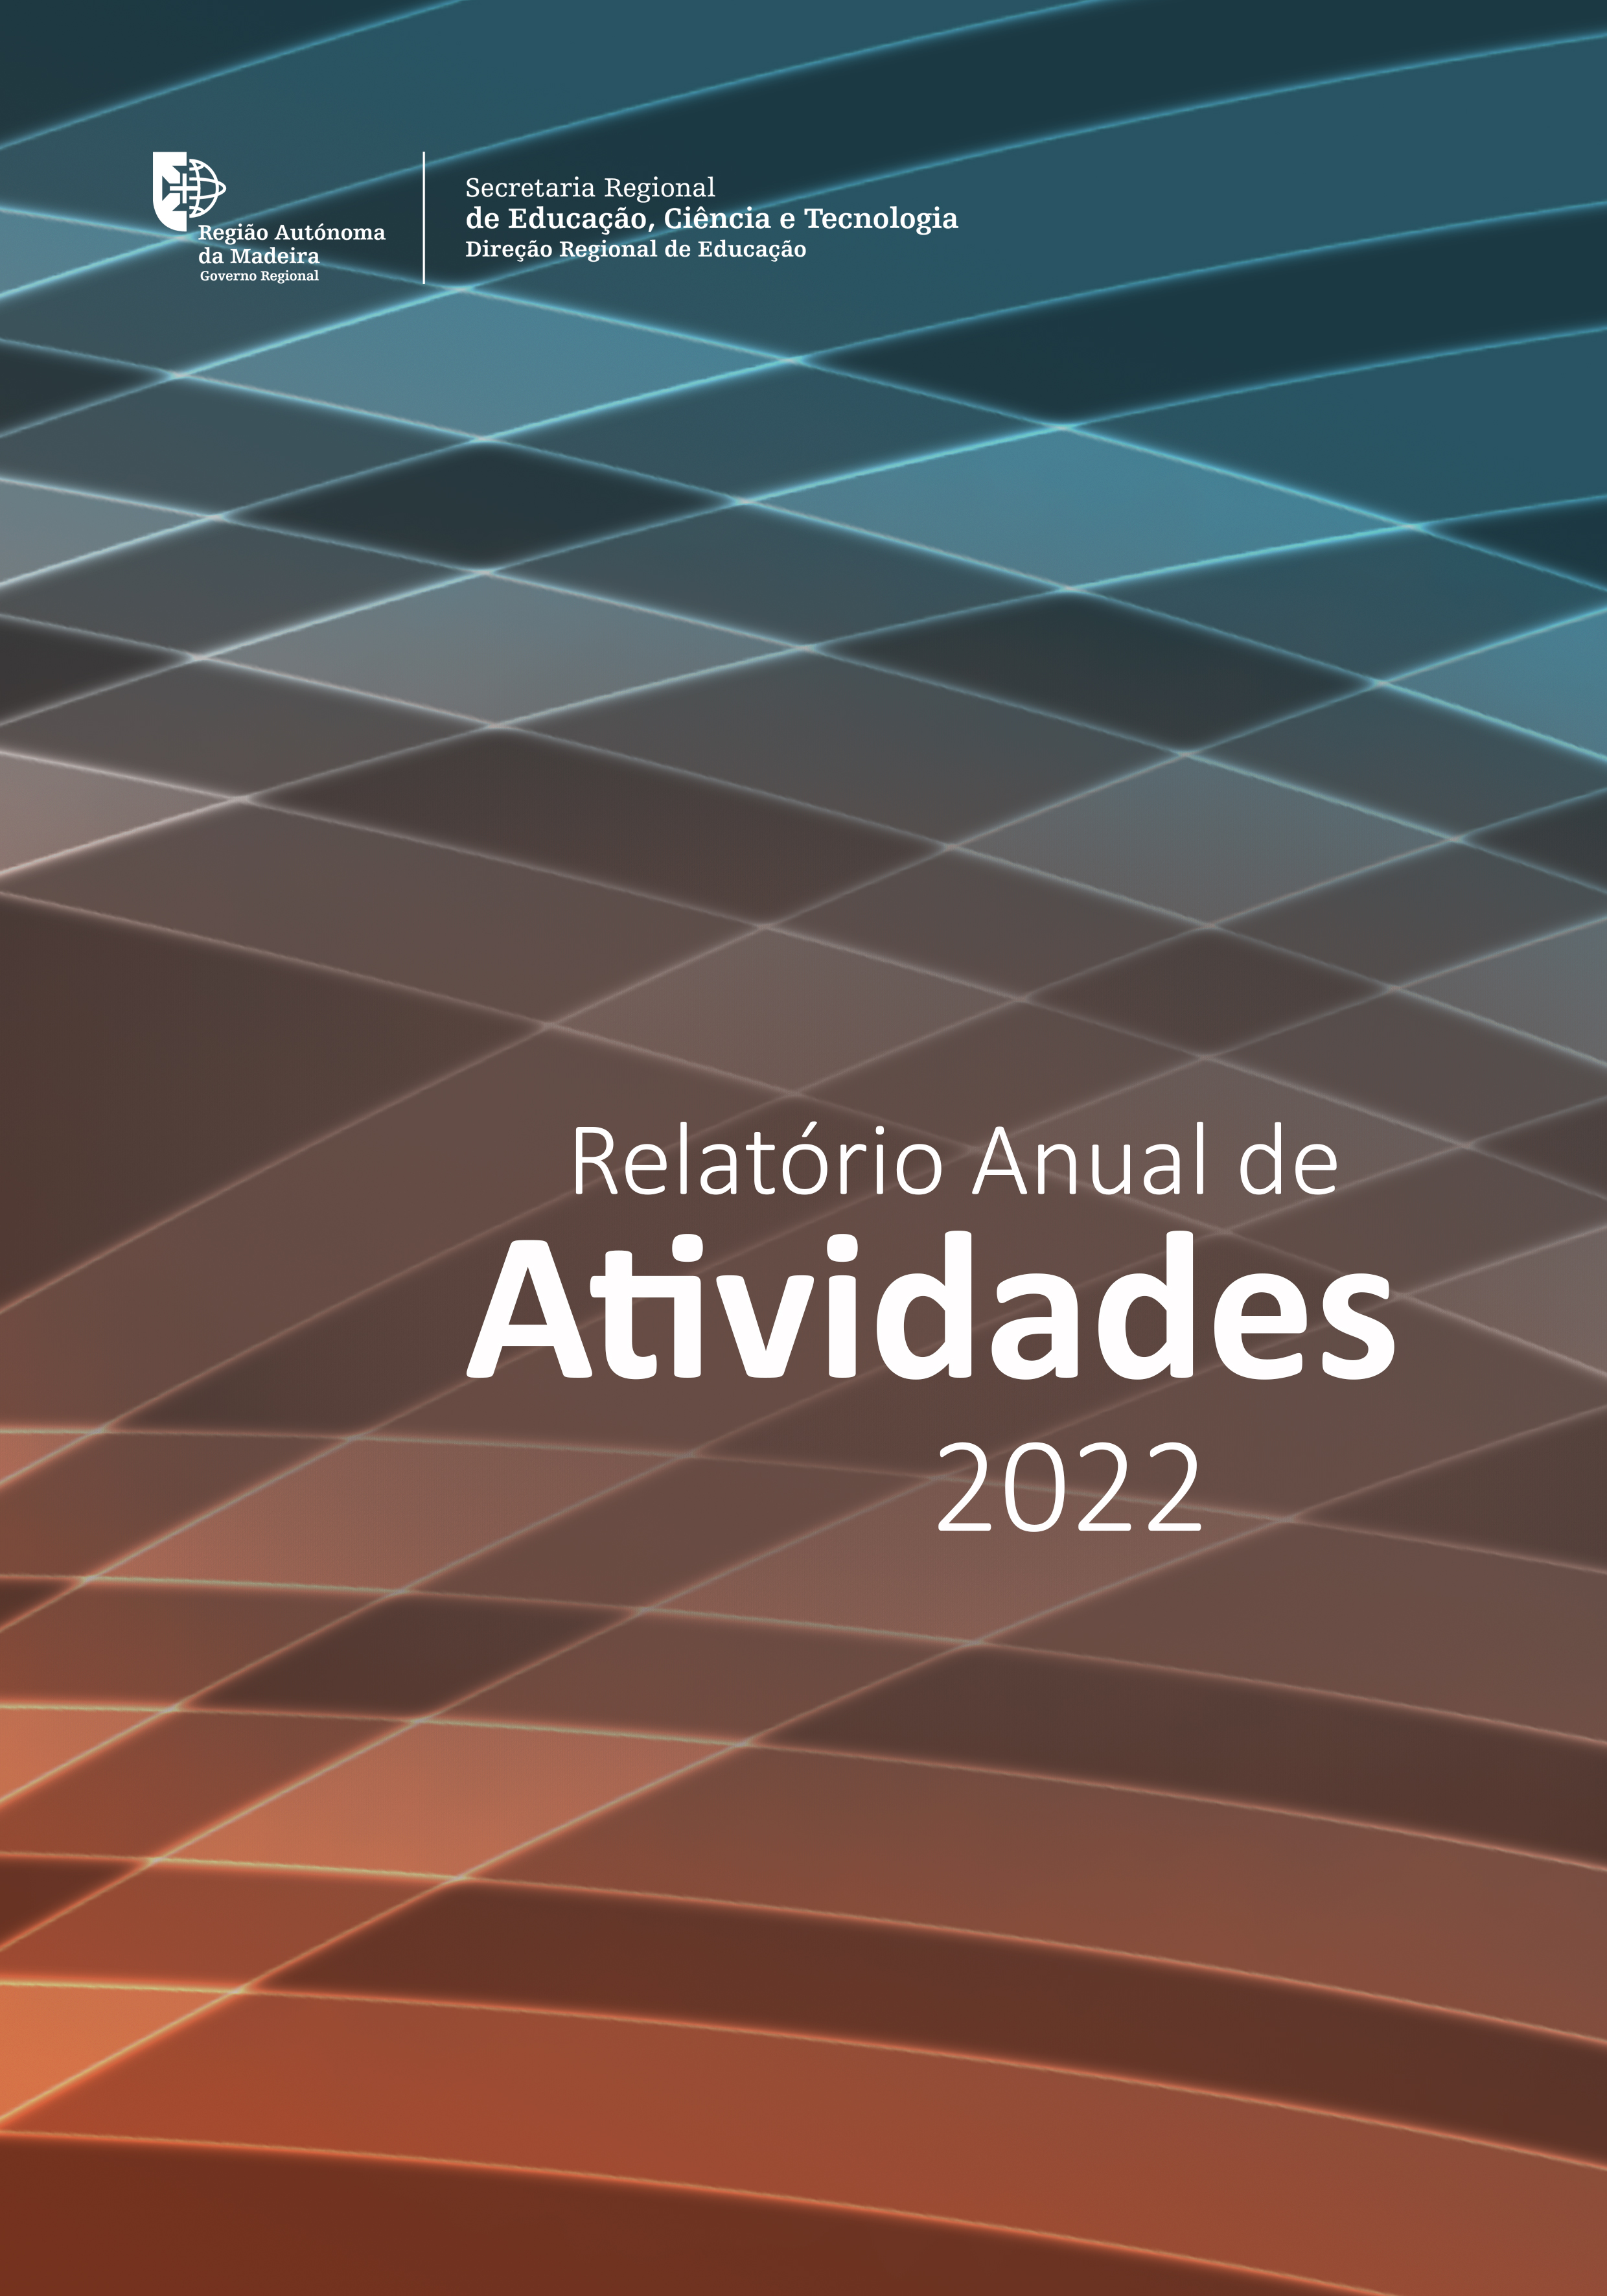 Relatório Anual de Atividades DRE 2022